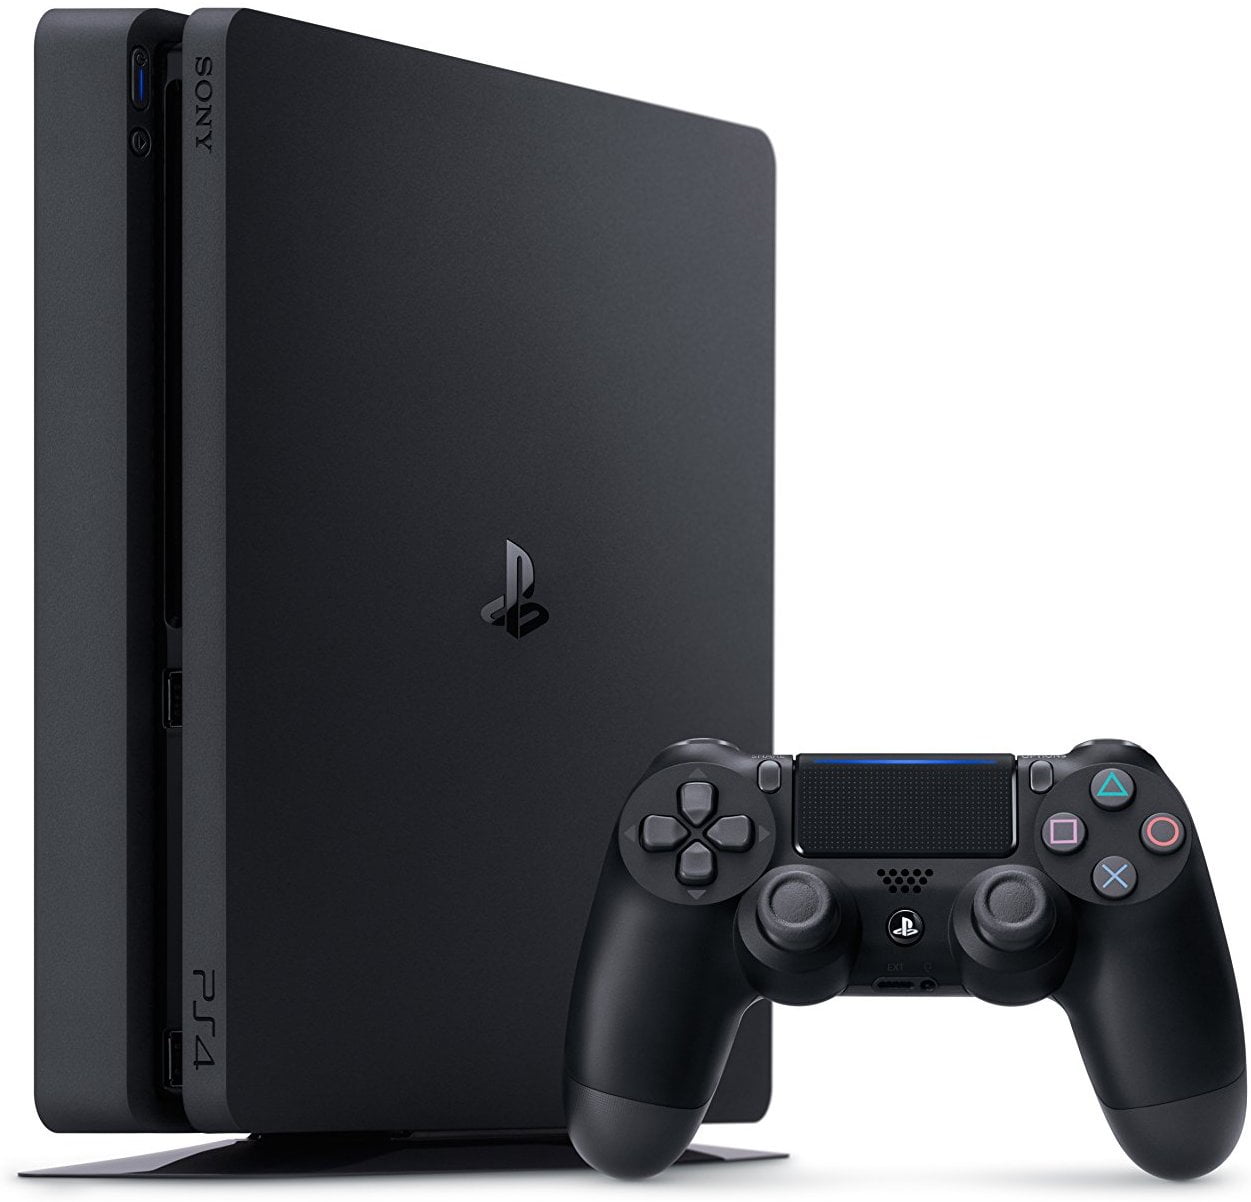 Helligdom aflevere Bugt Sony PlayStation 4 Slim 1TB Gaming Console, Black, CUH-2115B - Walmart.com